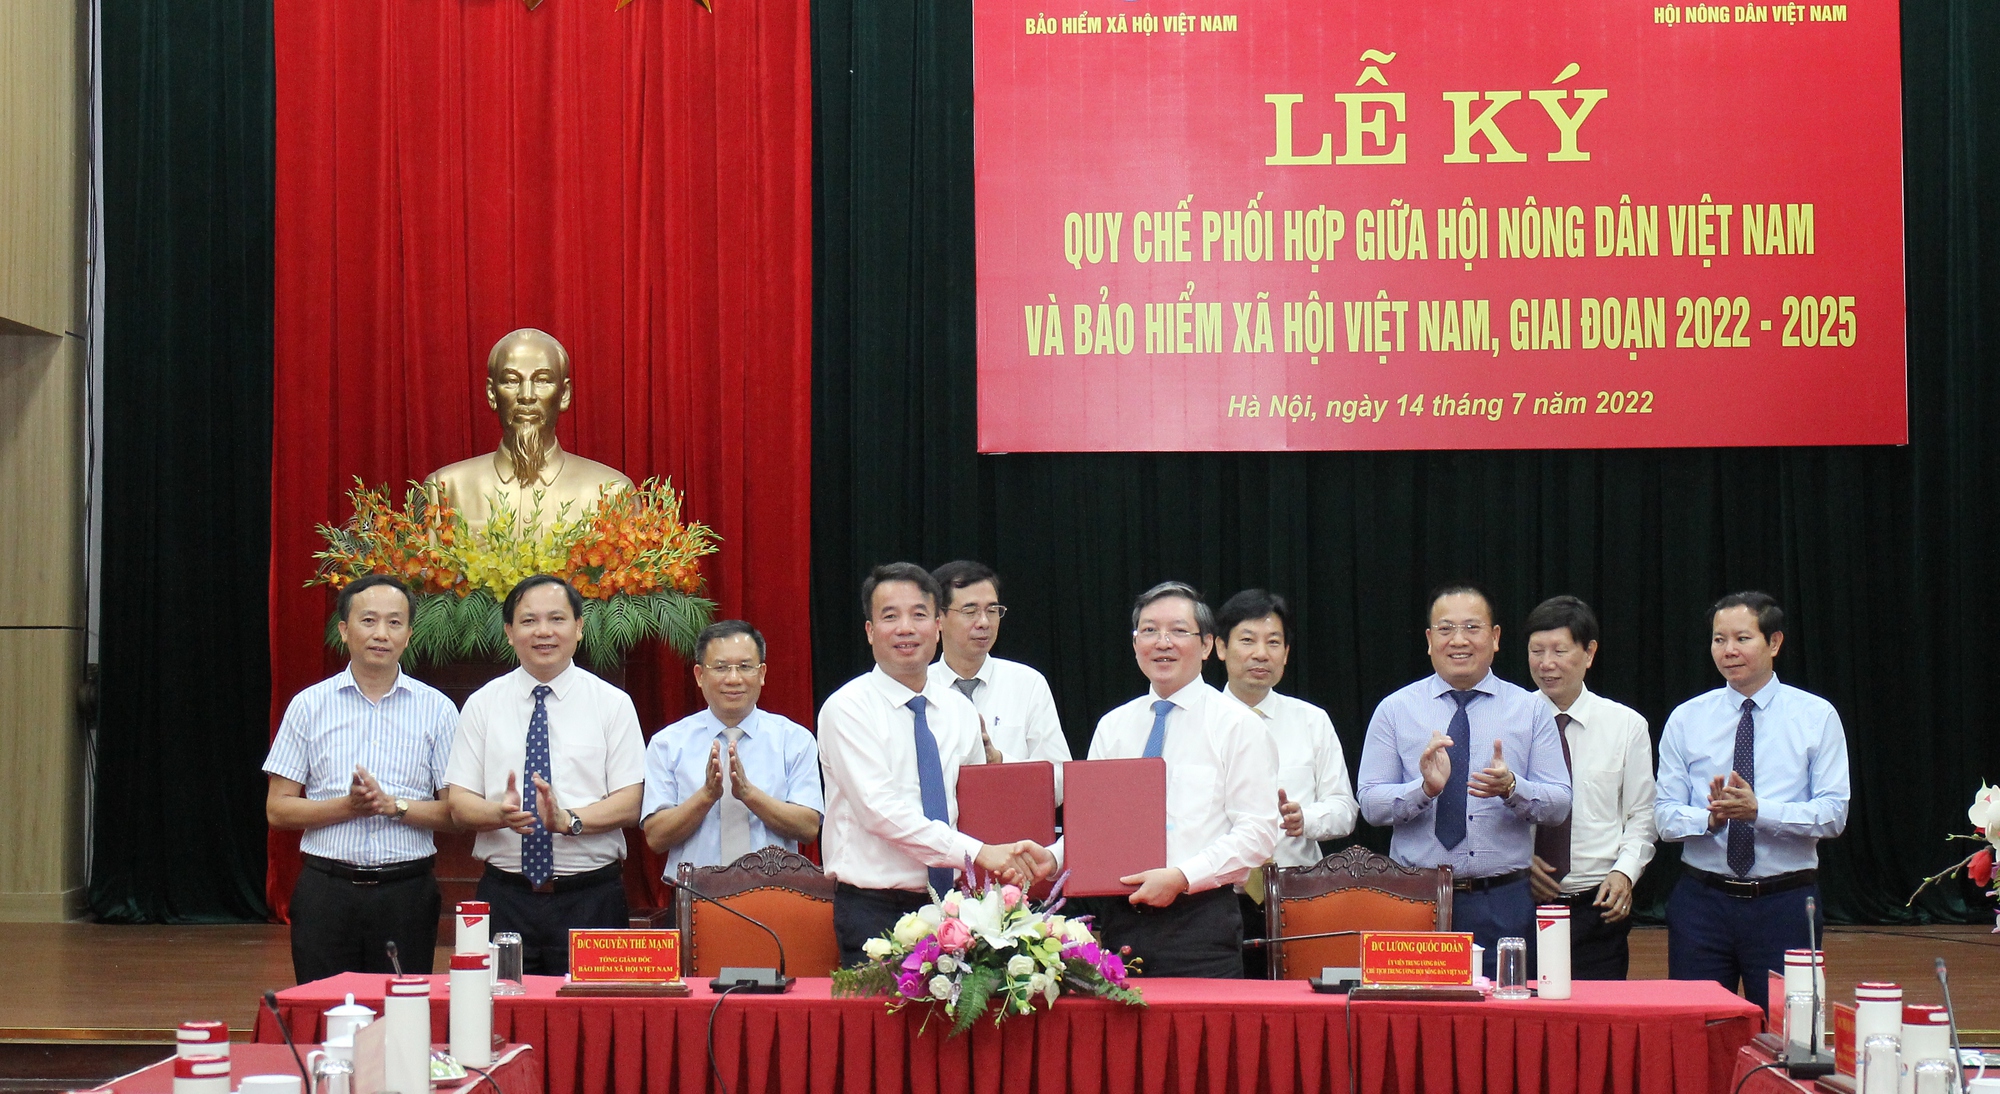 Hội Nông dân Việt Nam và Bảo hiểm xã hội Việt Nam ký quy chế phối hợp giai đoạn 2022-2025 - Ảnh 4.